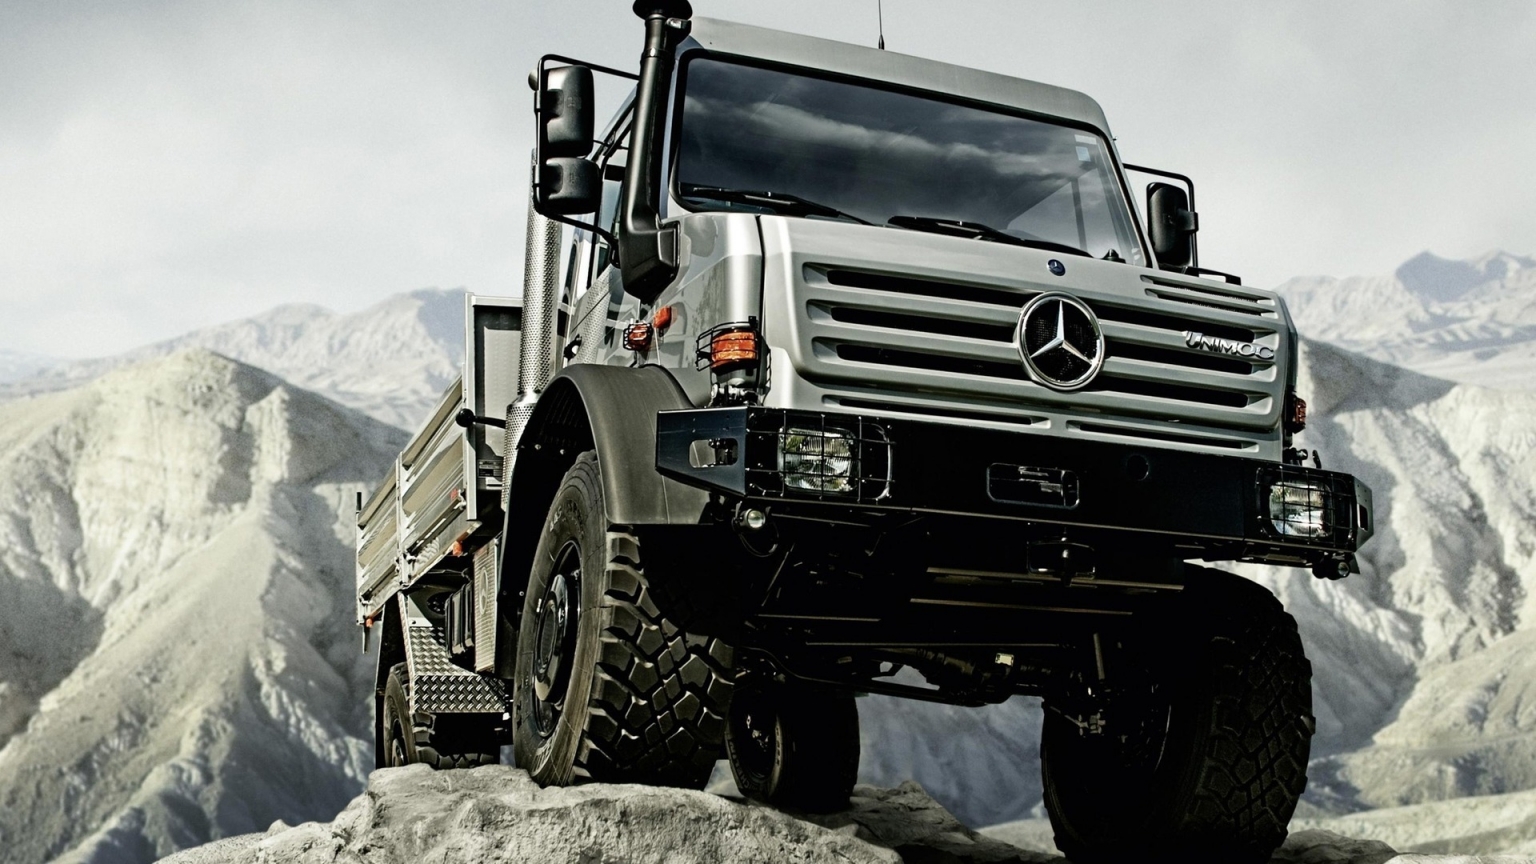 Mercedes Benz Unimog U5000 Truck for 1536 x 864 HDTV resolution